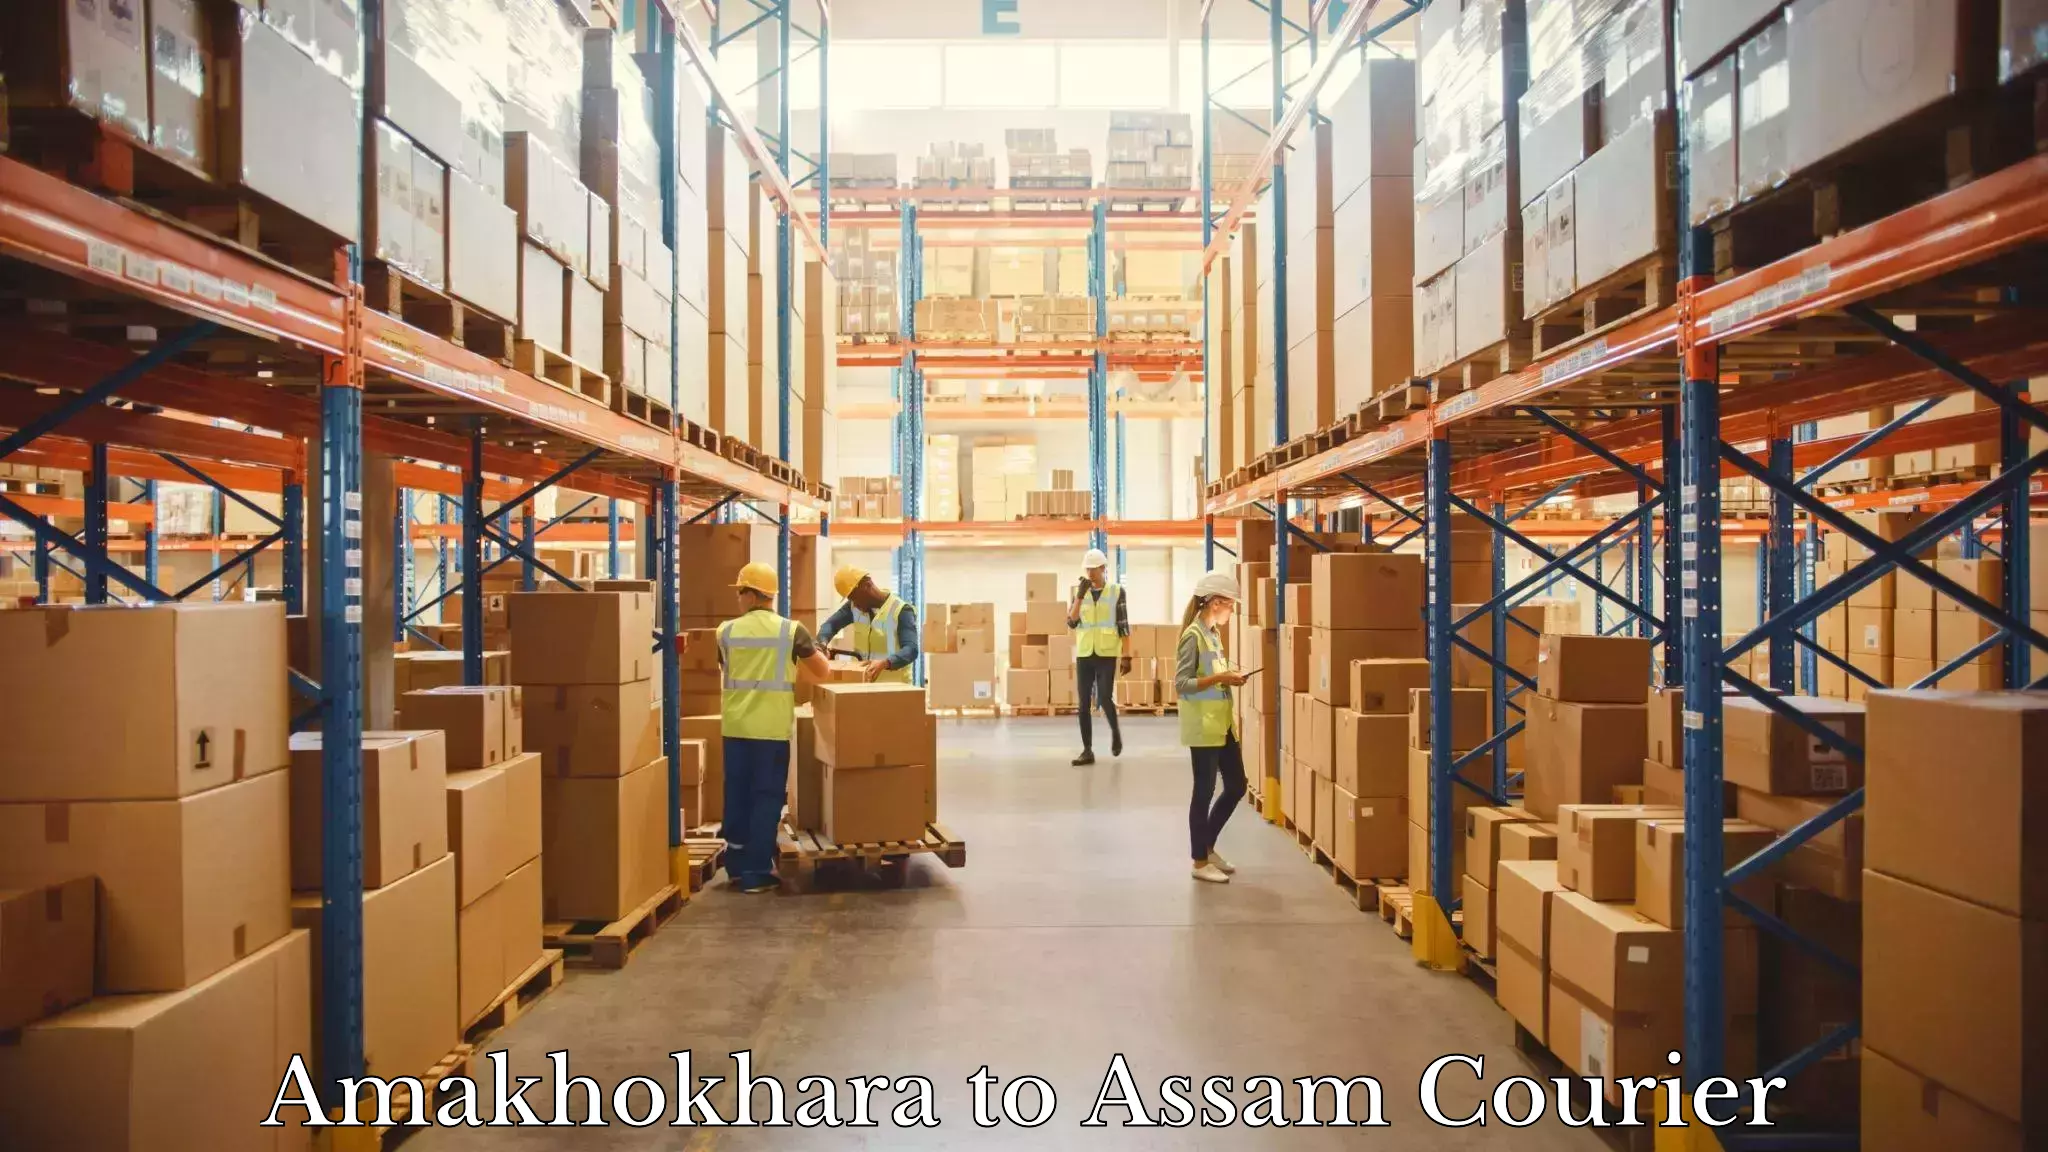 On-demand shipping options Amakhokhara to Pathsala